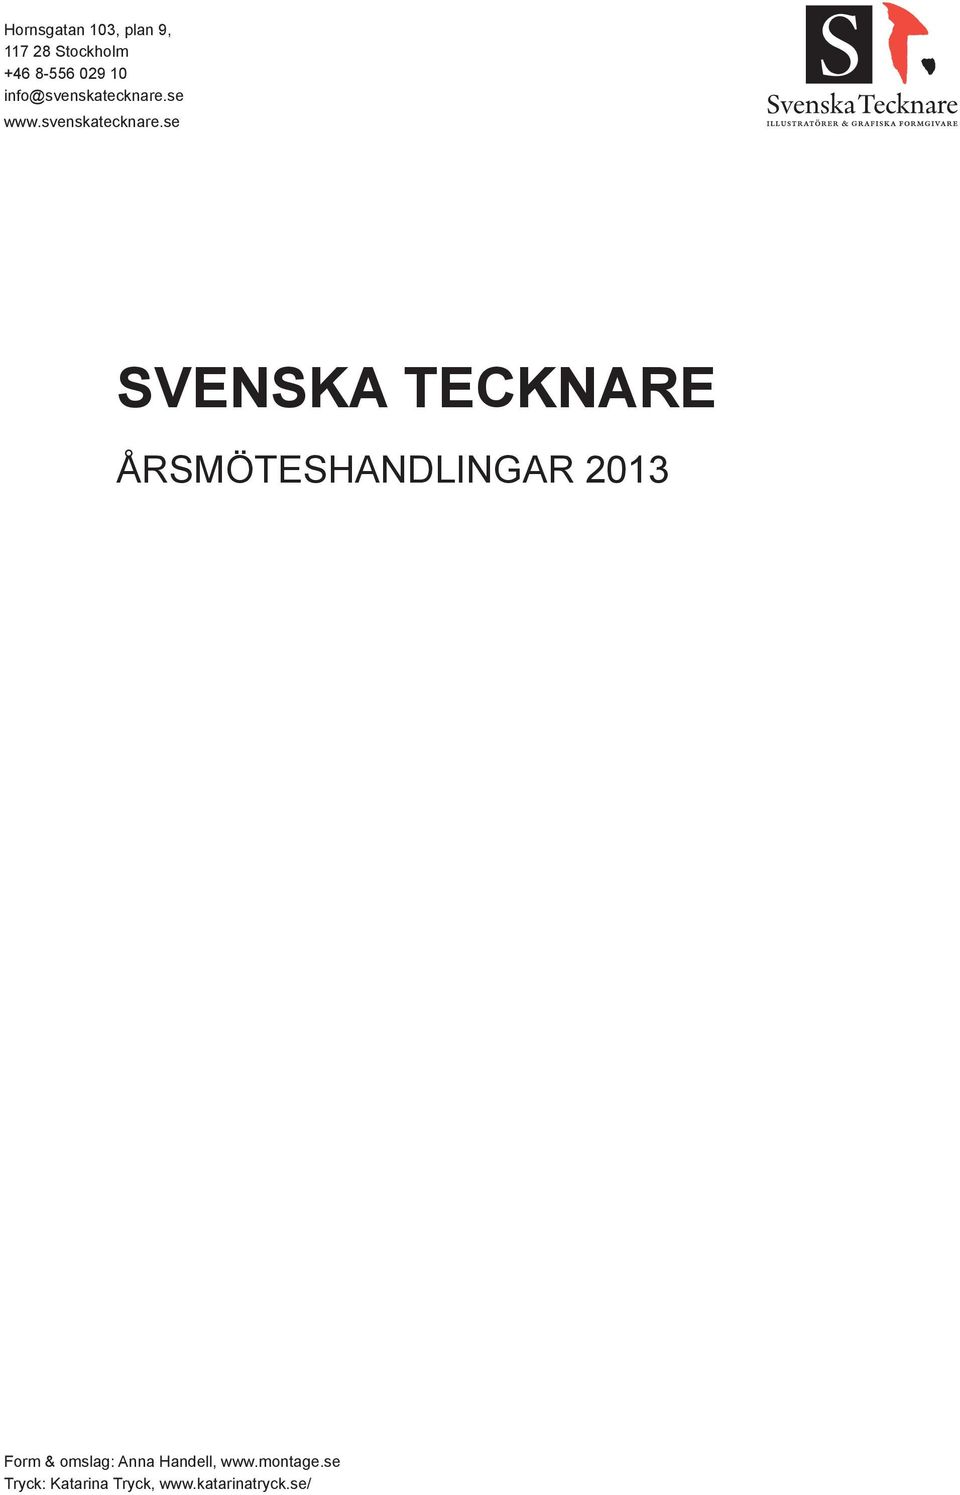 se www.svenskatecknare.